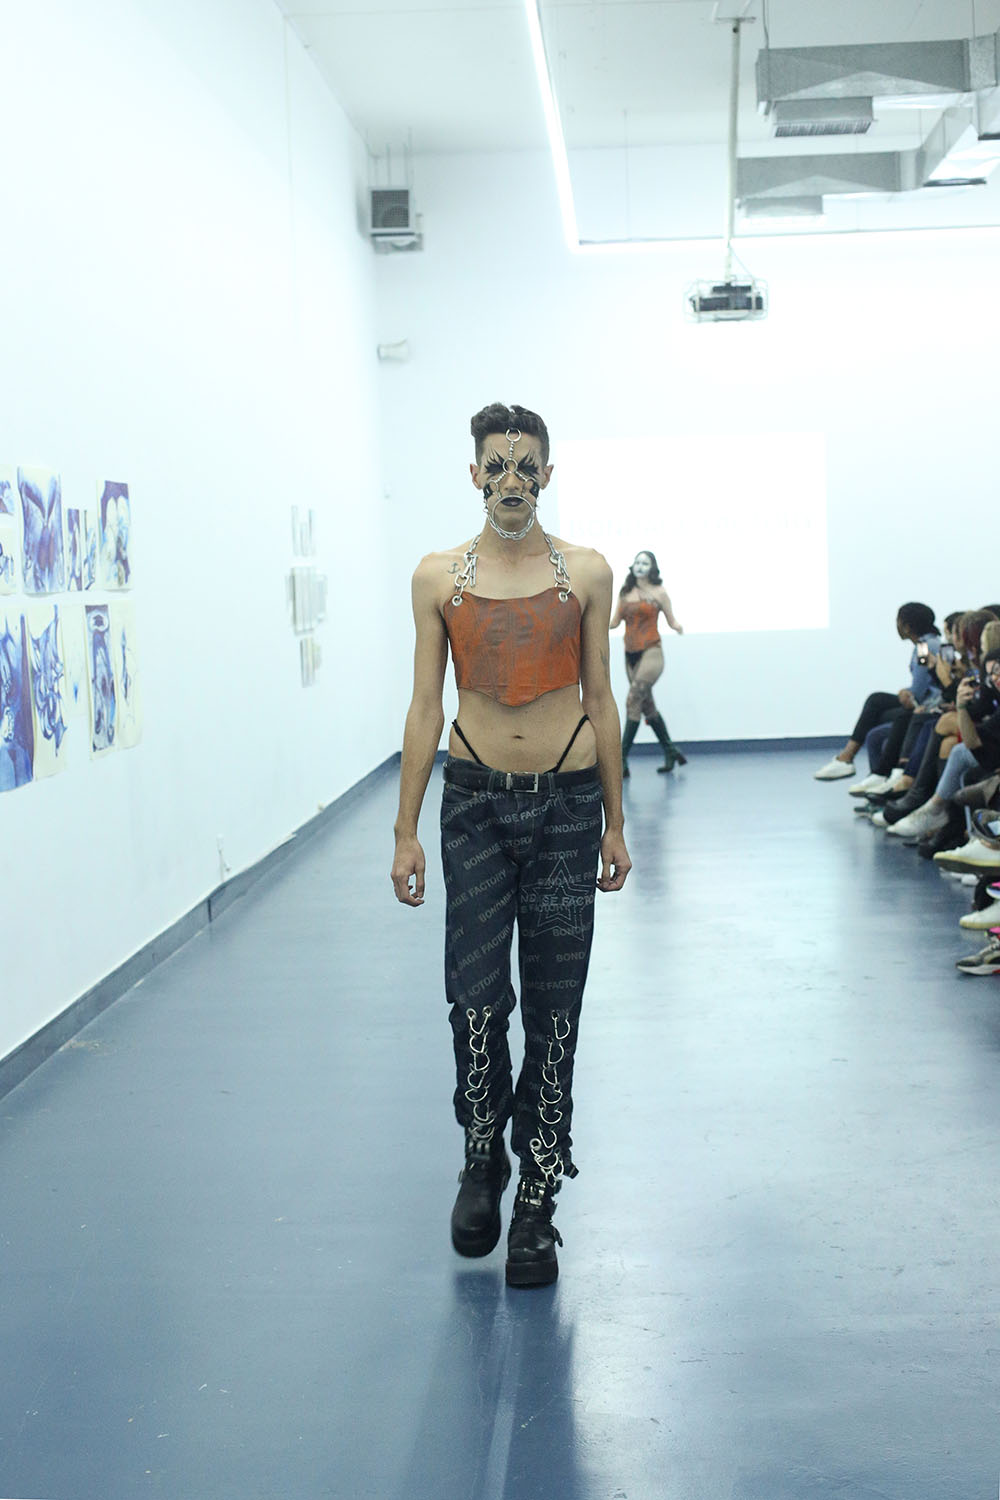 Género, etnias y cuerpo en el desfile de Bondage Factory “Skin Couture 2022”